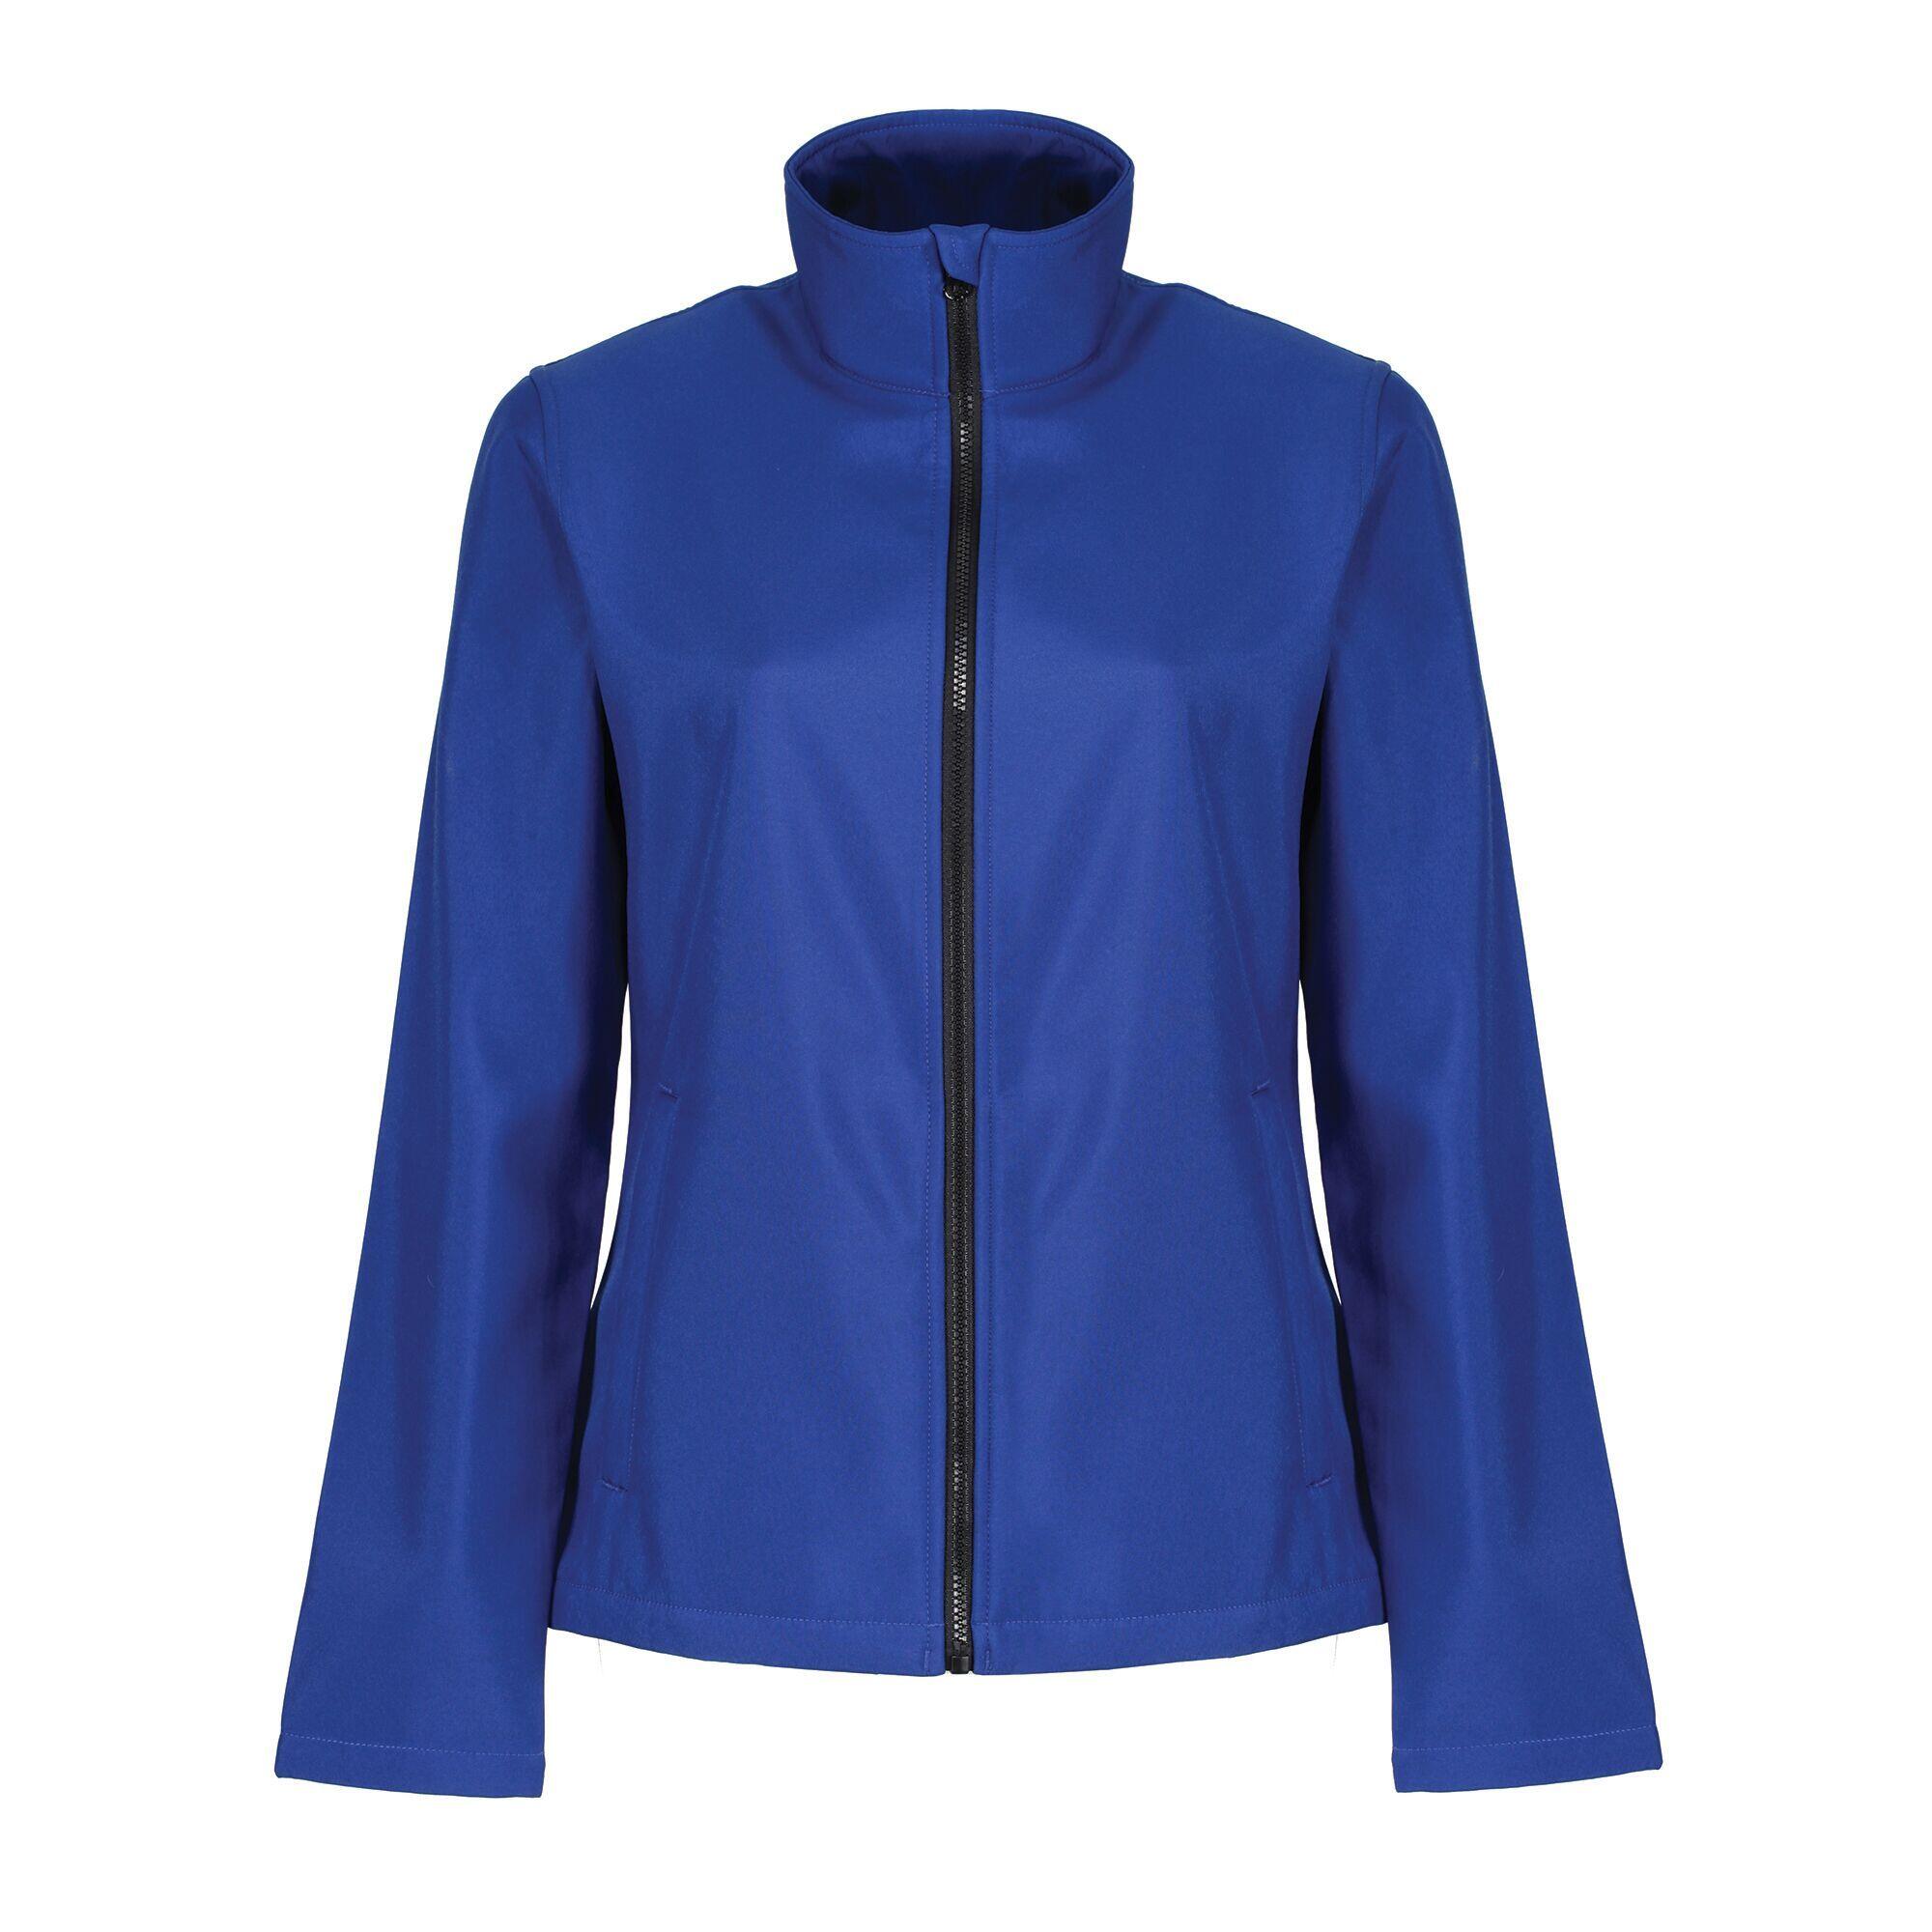 Womens/Ladies Ablaze Printable Softshell Jacket (Royal Blue/Black) 1/5